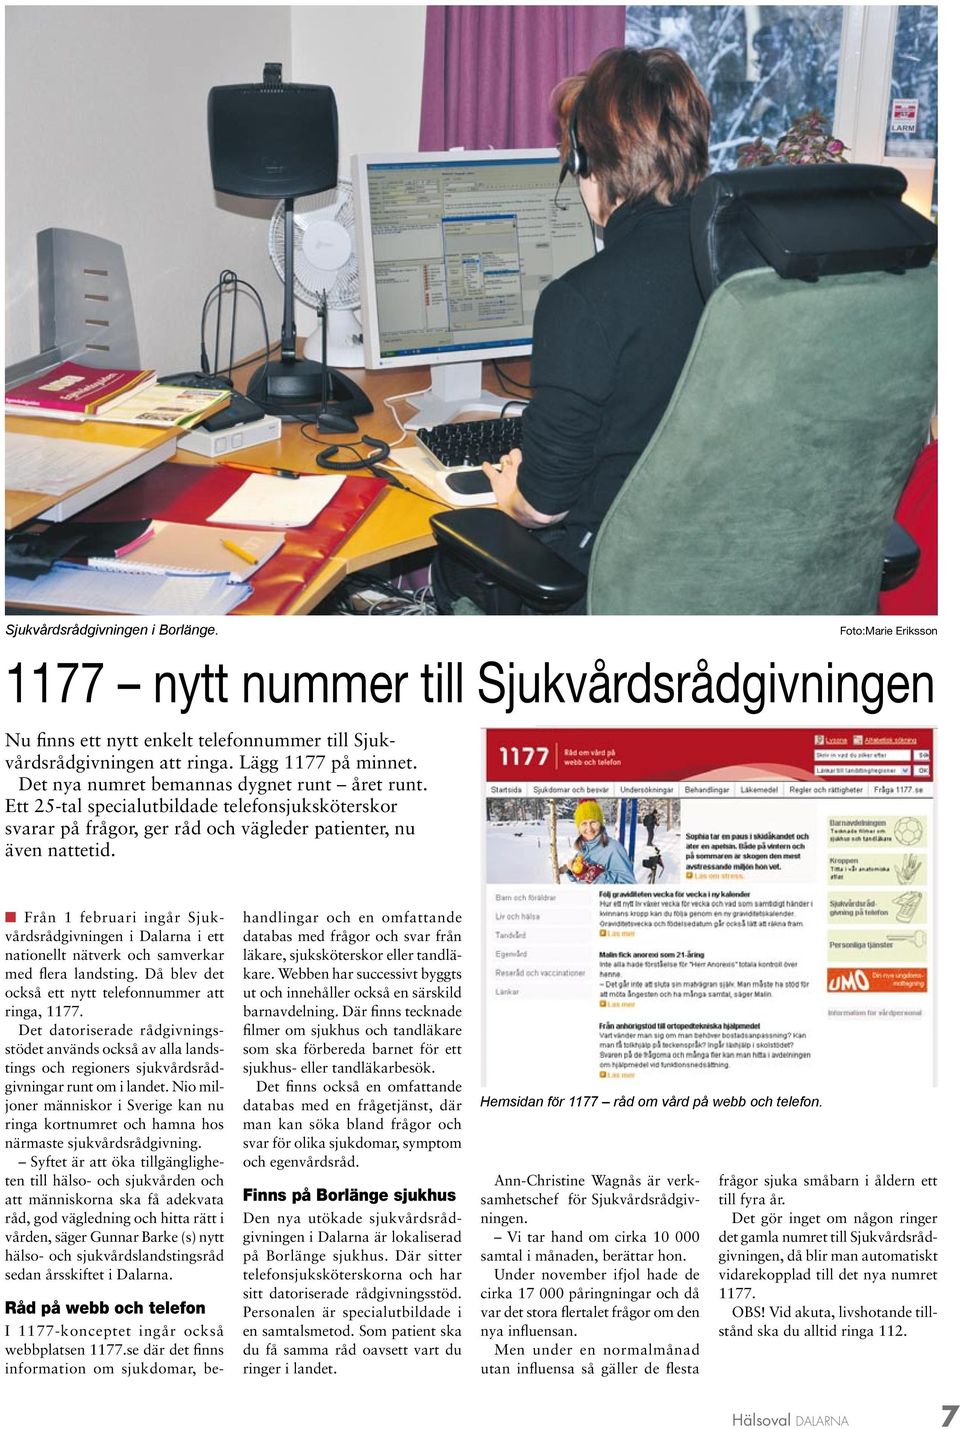 n Från 1 februari ingår Sjukvårdsrådgivningen i Dalarna i ett nationellt nätverk och samverkar med flera landsting. Då blev det också ett nytt telefonnummer att ringa, 1177.